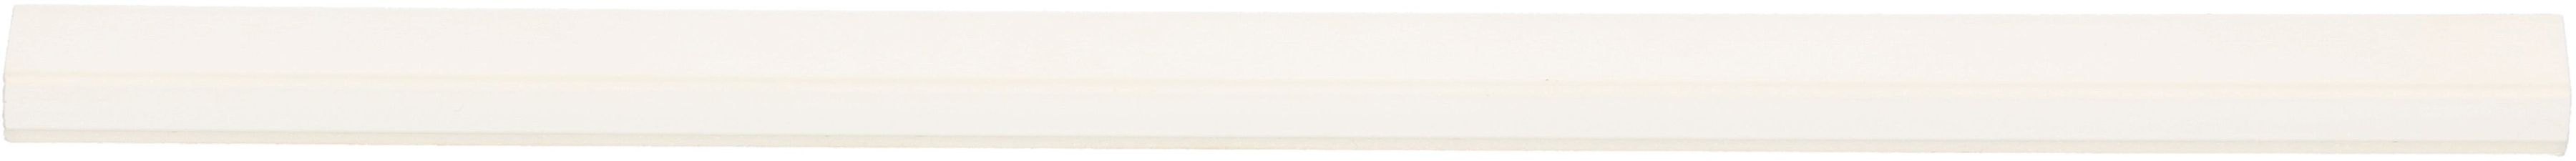 Goulotte 9x5mm blanc auto-adhésif 2m